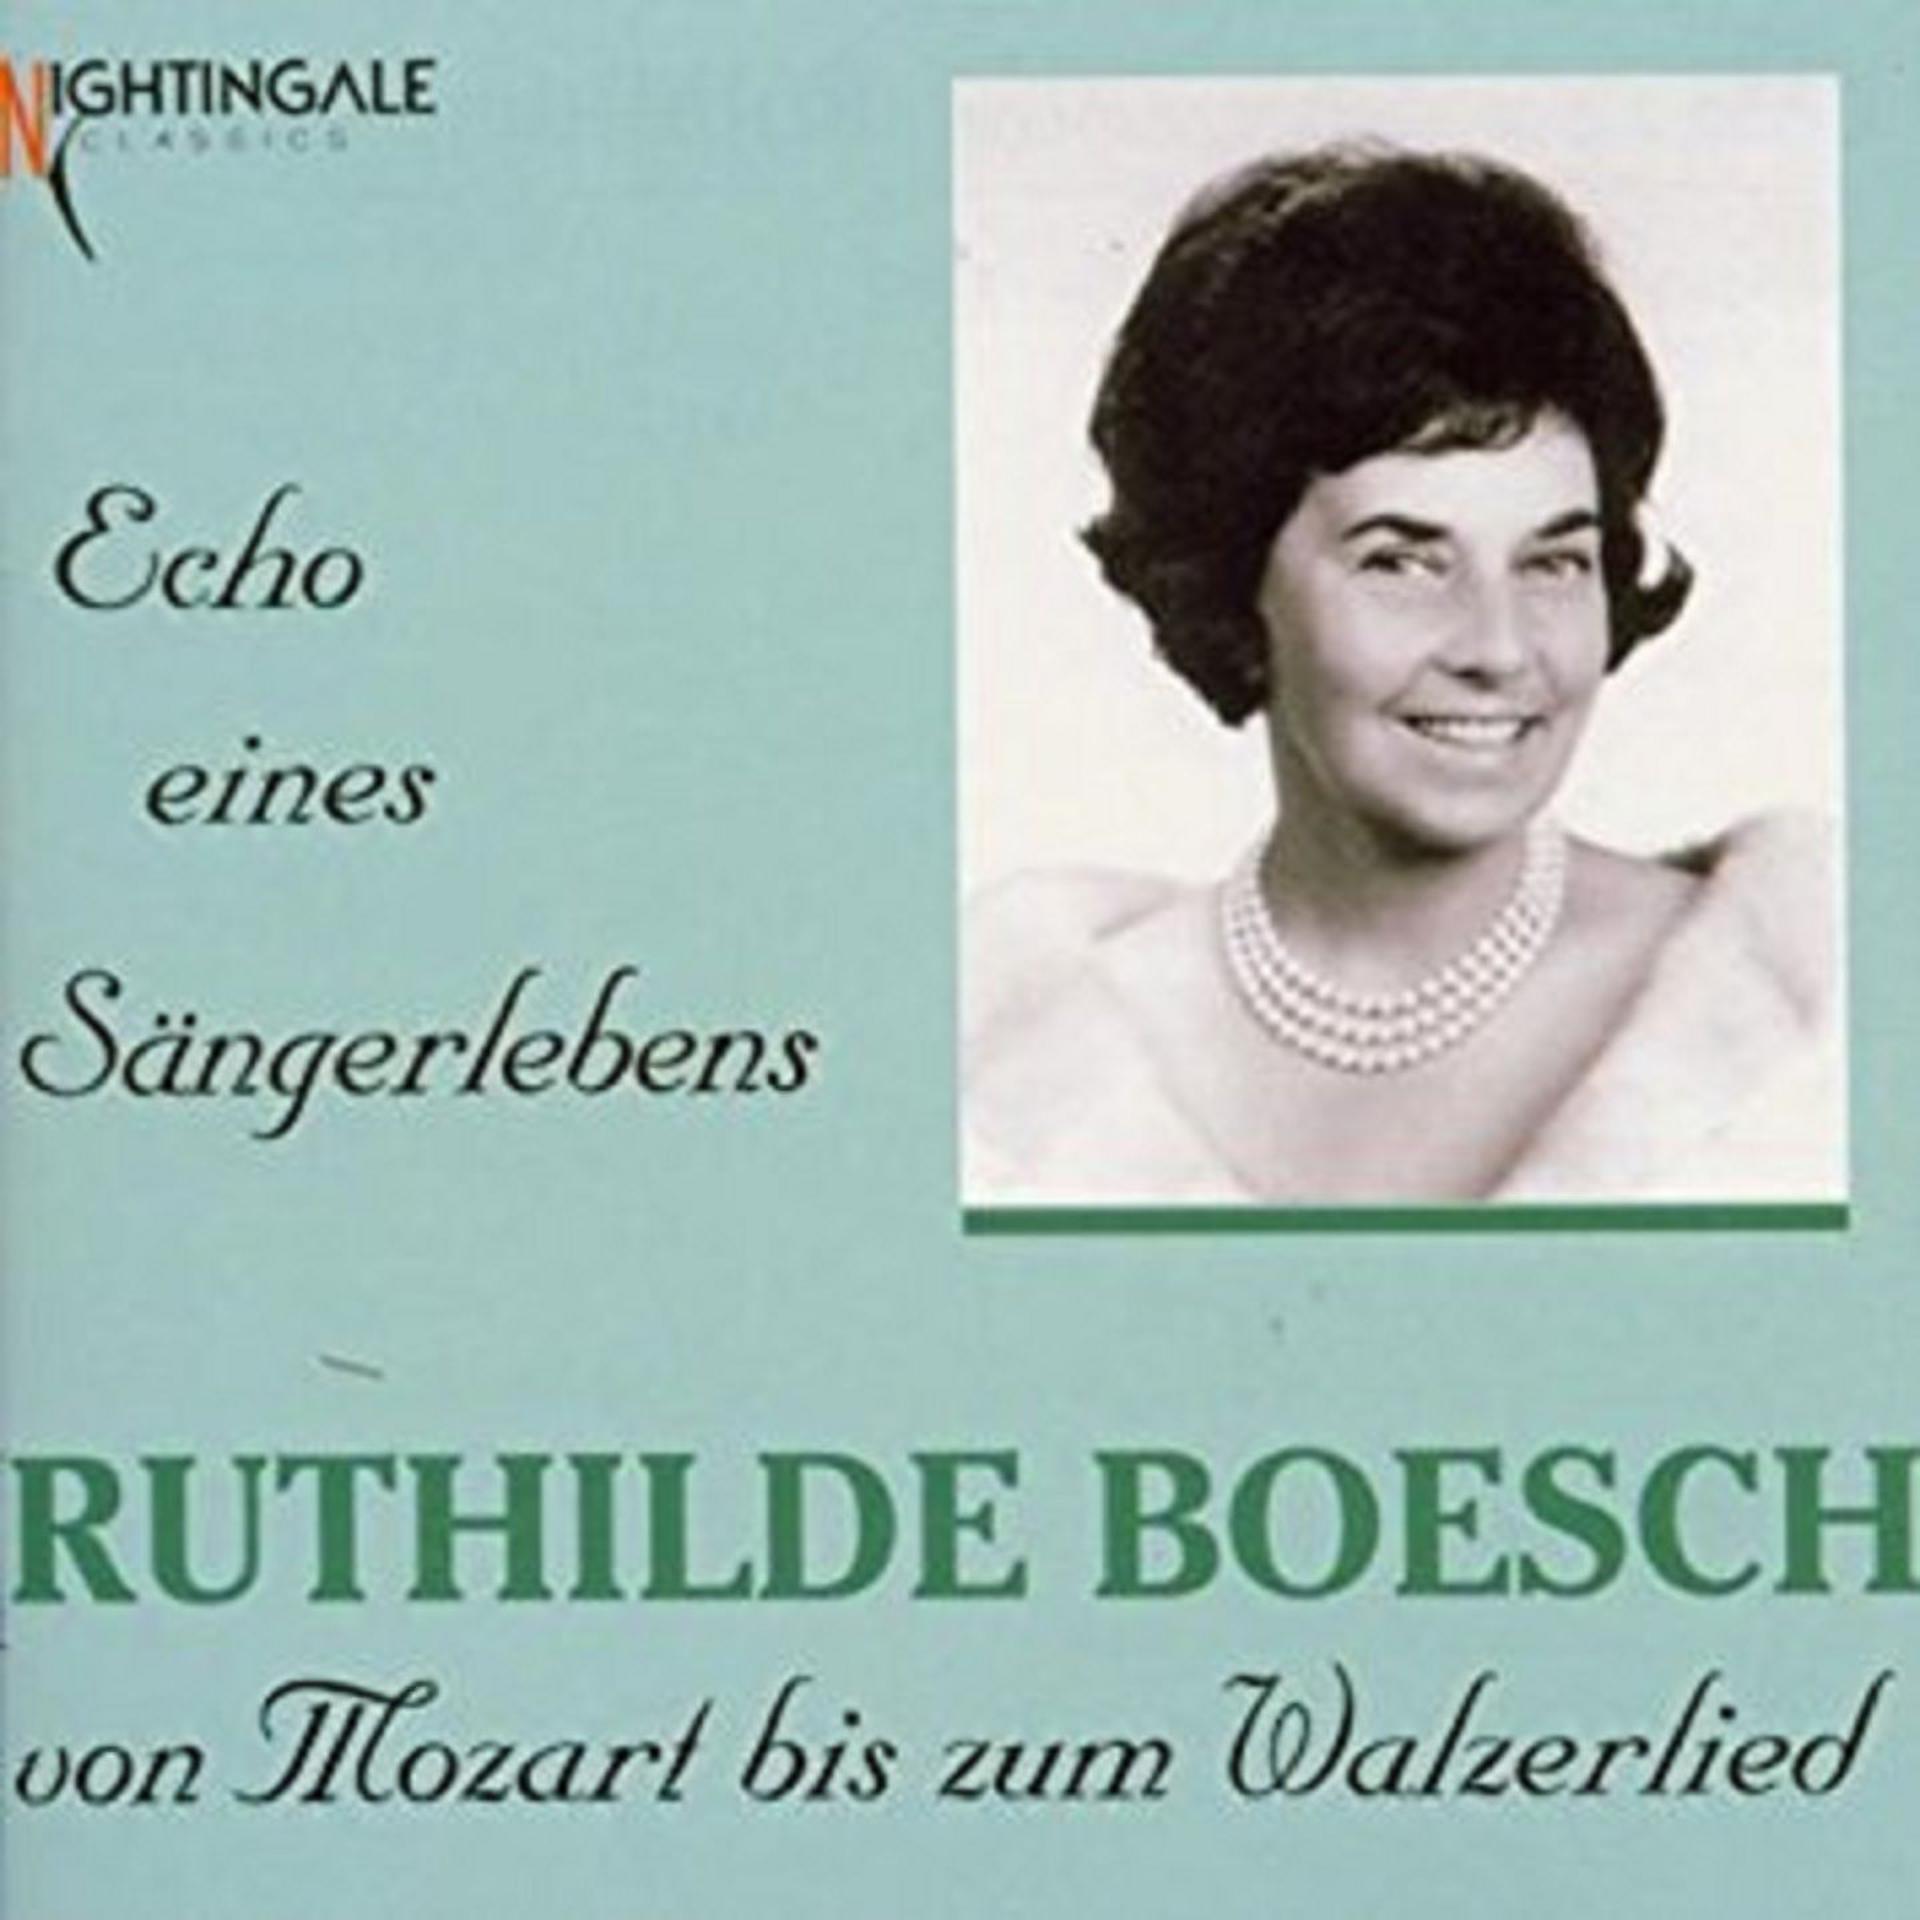 Постер альбома Ruthilde Boesch - Echo eines Sängerlebens